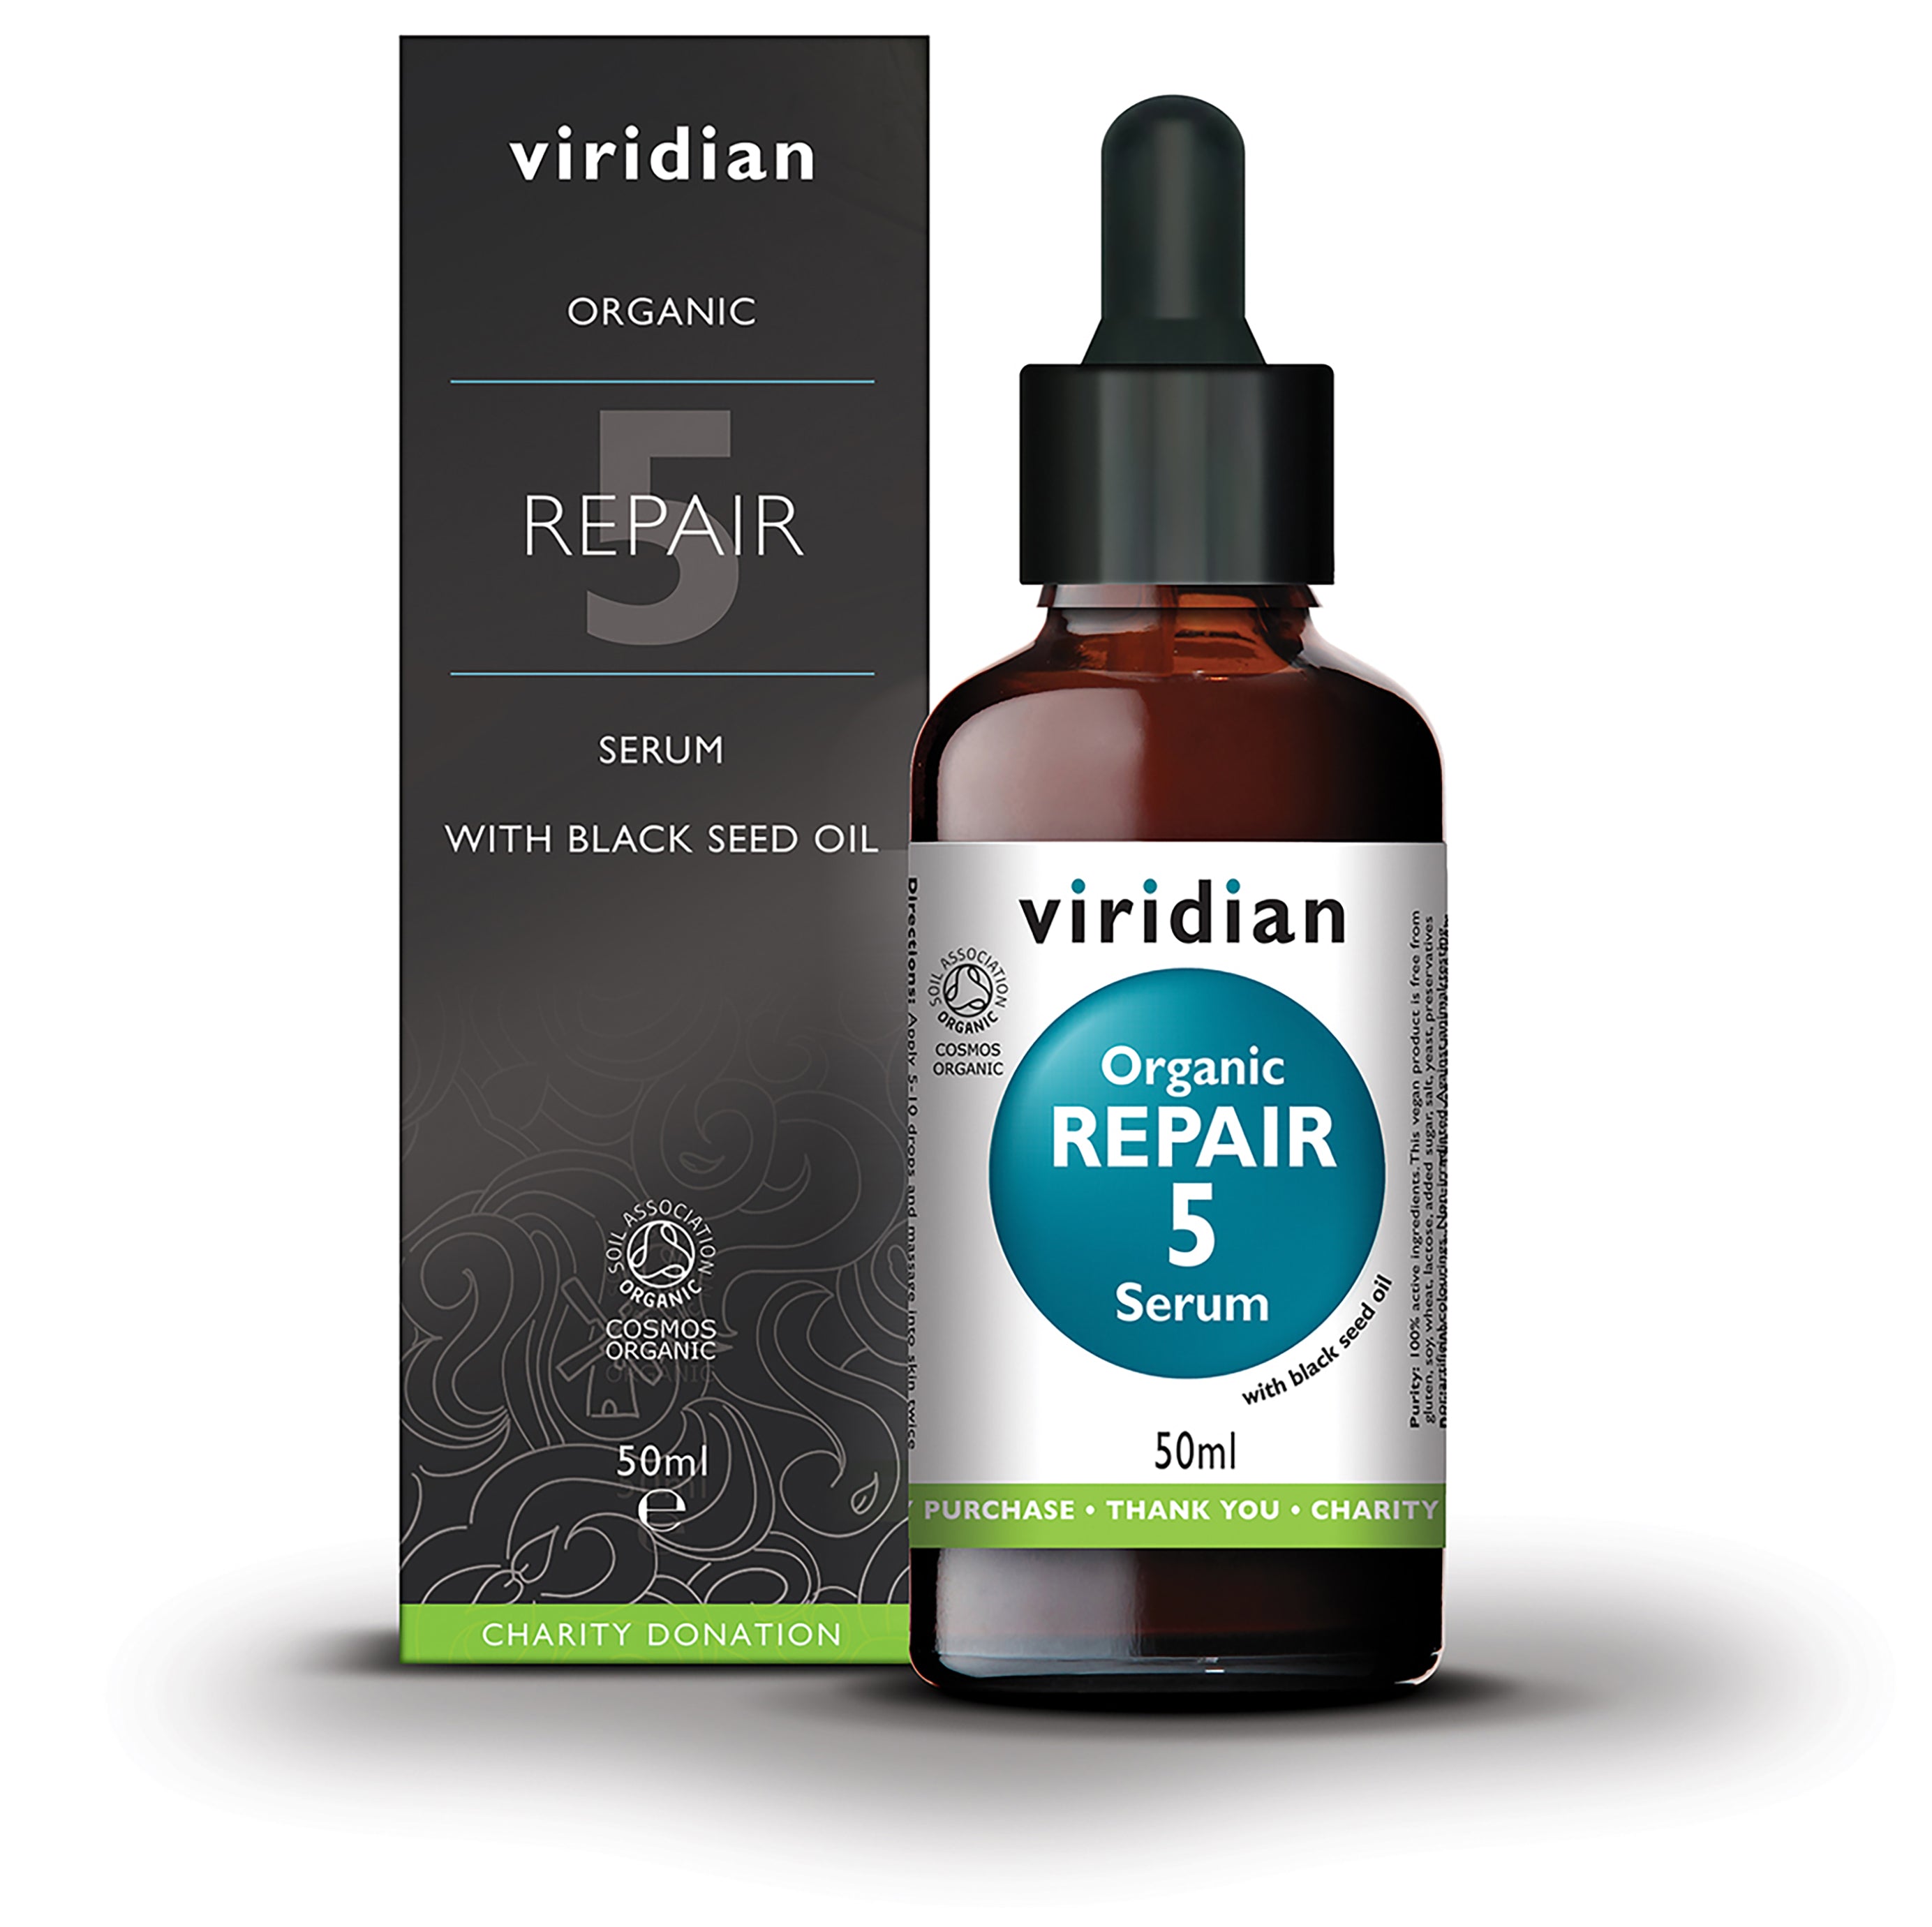 Viridian Organic Repair 5 Serum 50ml